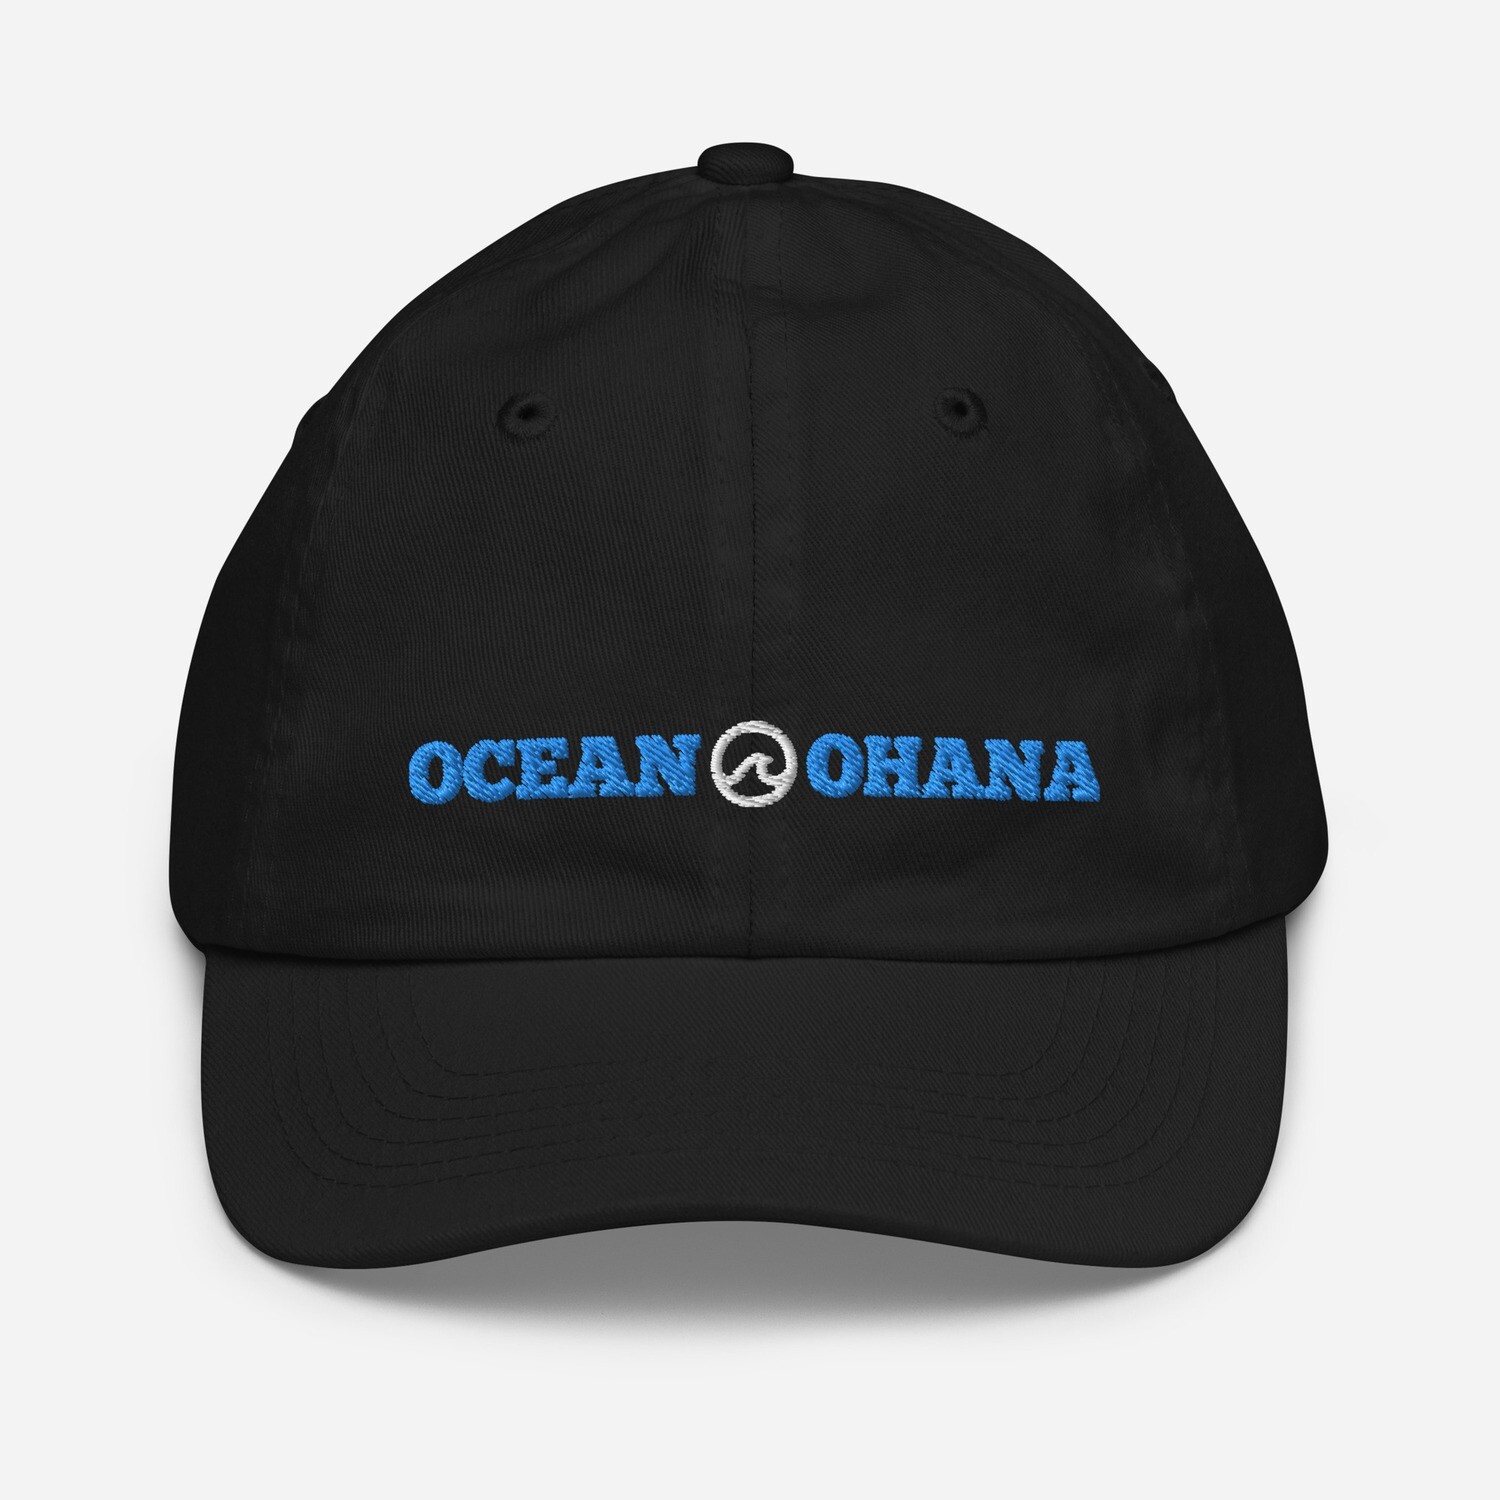 Ocean Ohana Youth baseball cap (ships separately)